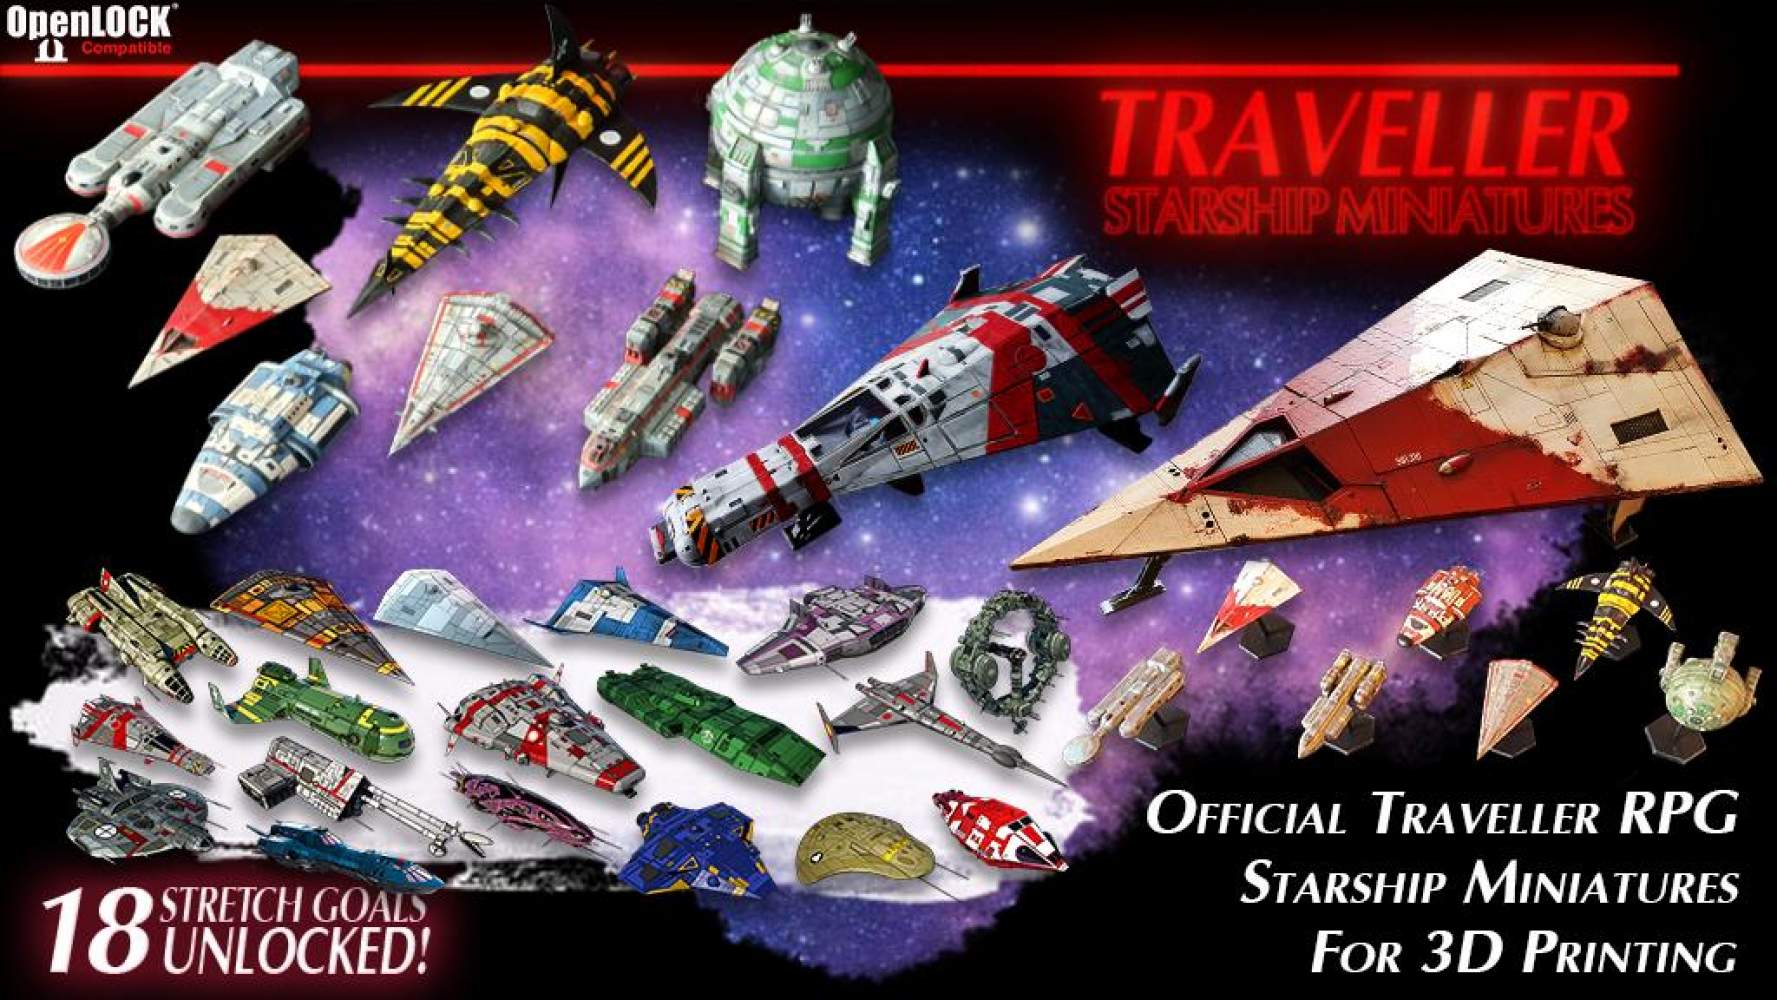 Traveller RPG Starship Miniatures